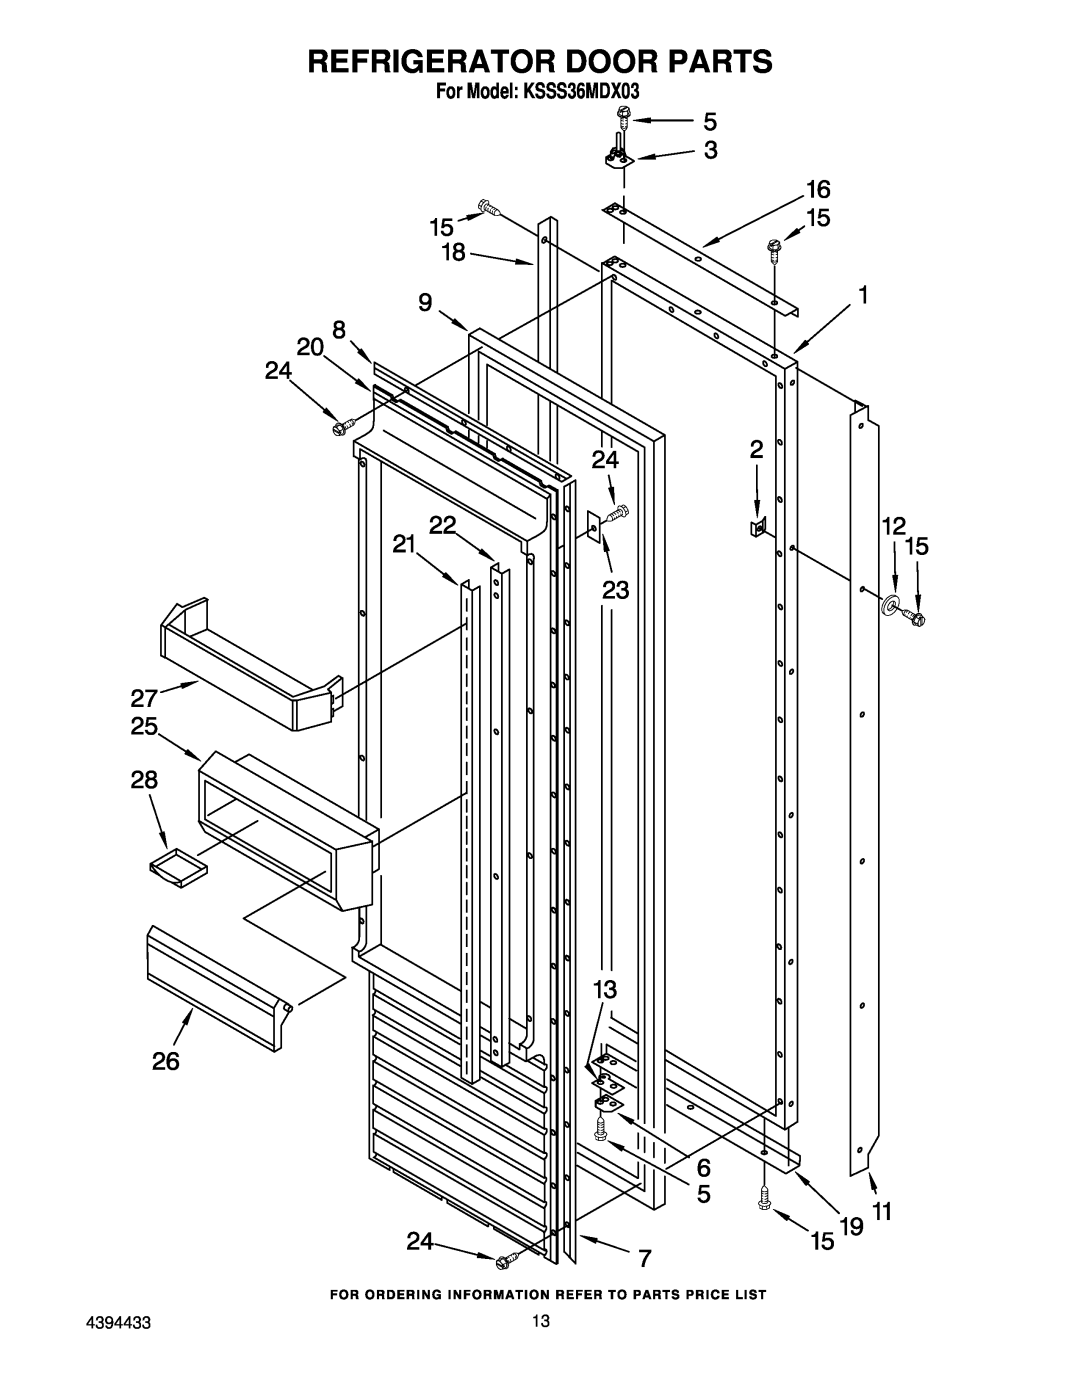 KitchenAid manual Refrigerator Door Parts, For Model KSSS36MDX03 